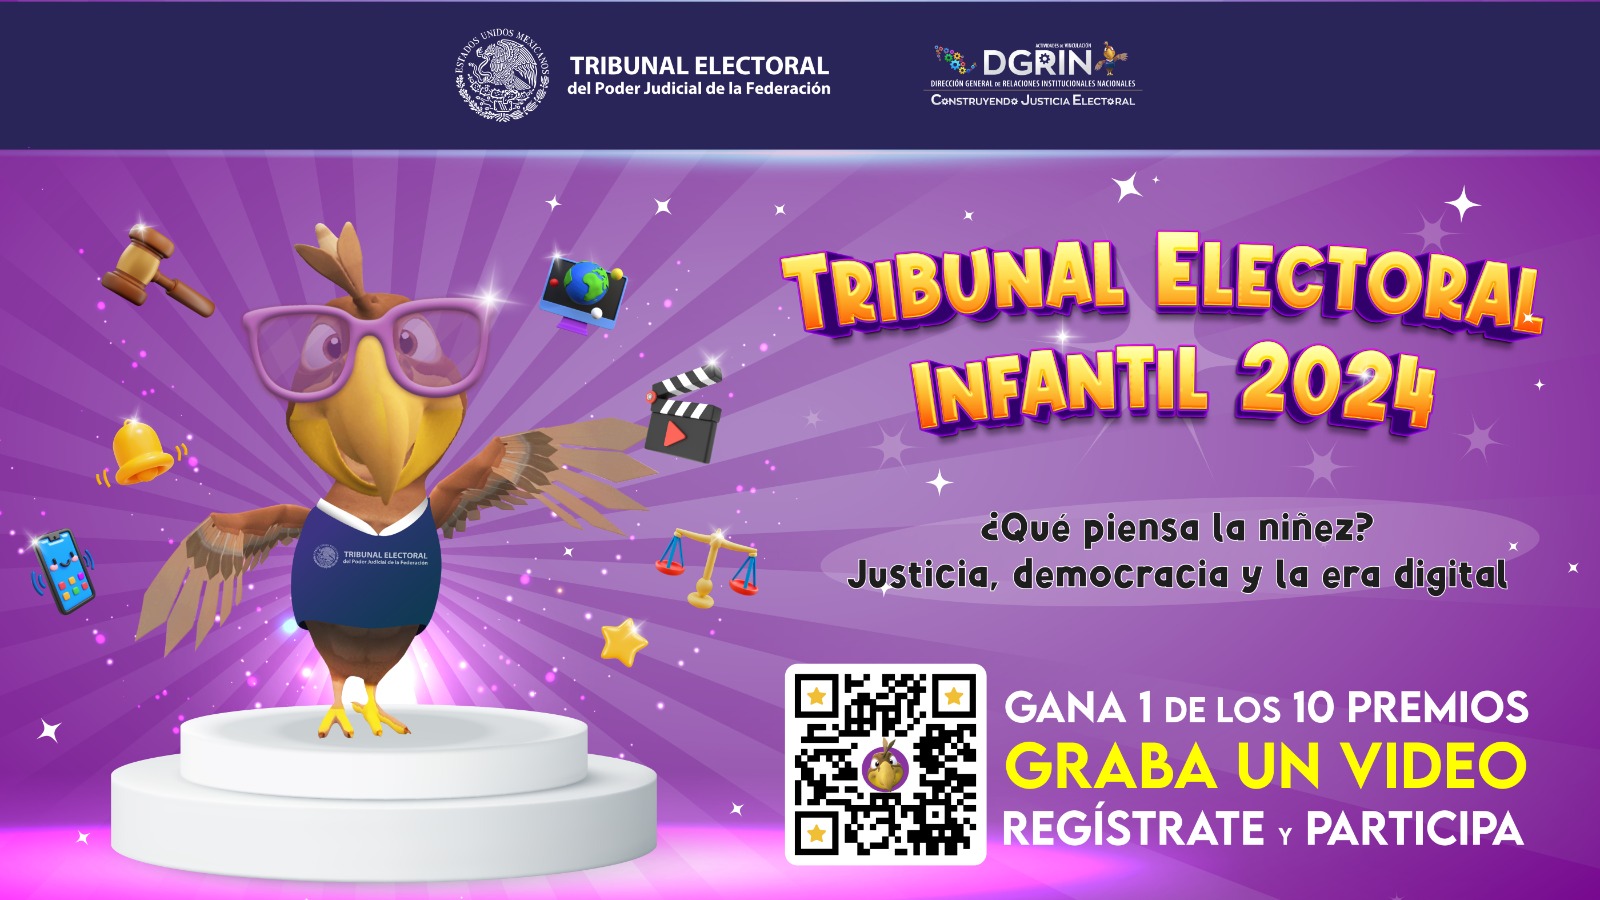 El TEPJF y el IIN-OEA convocan a la 7ª edición del Tribunal Electoral Infantil 2024 y coordinan la realización de cuentos para la niñez mexicana